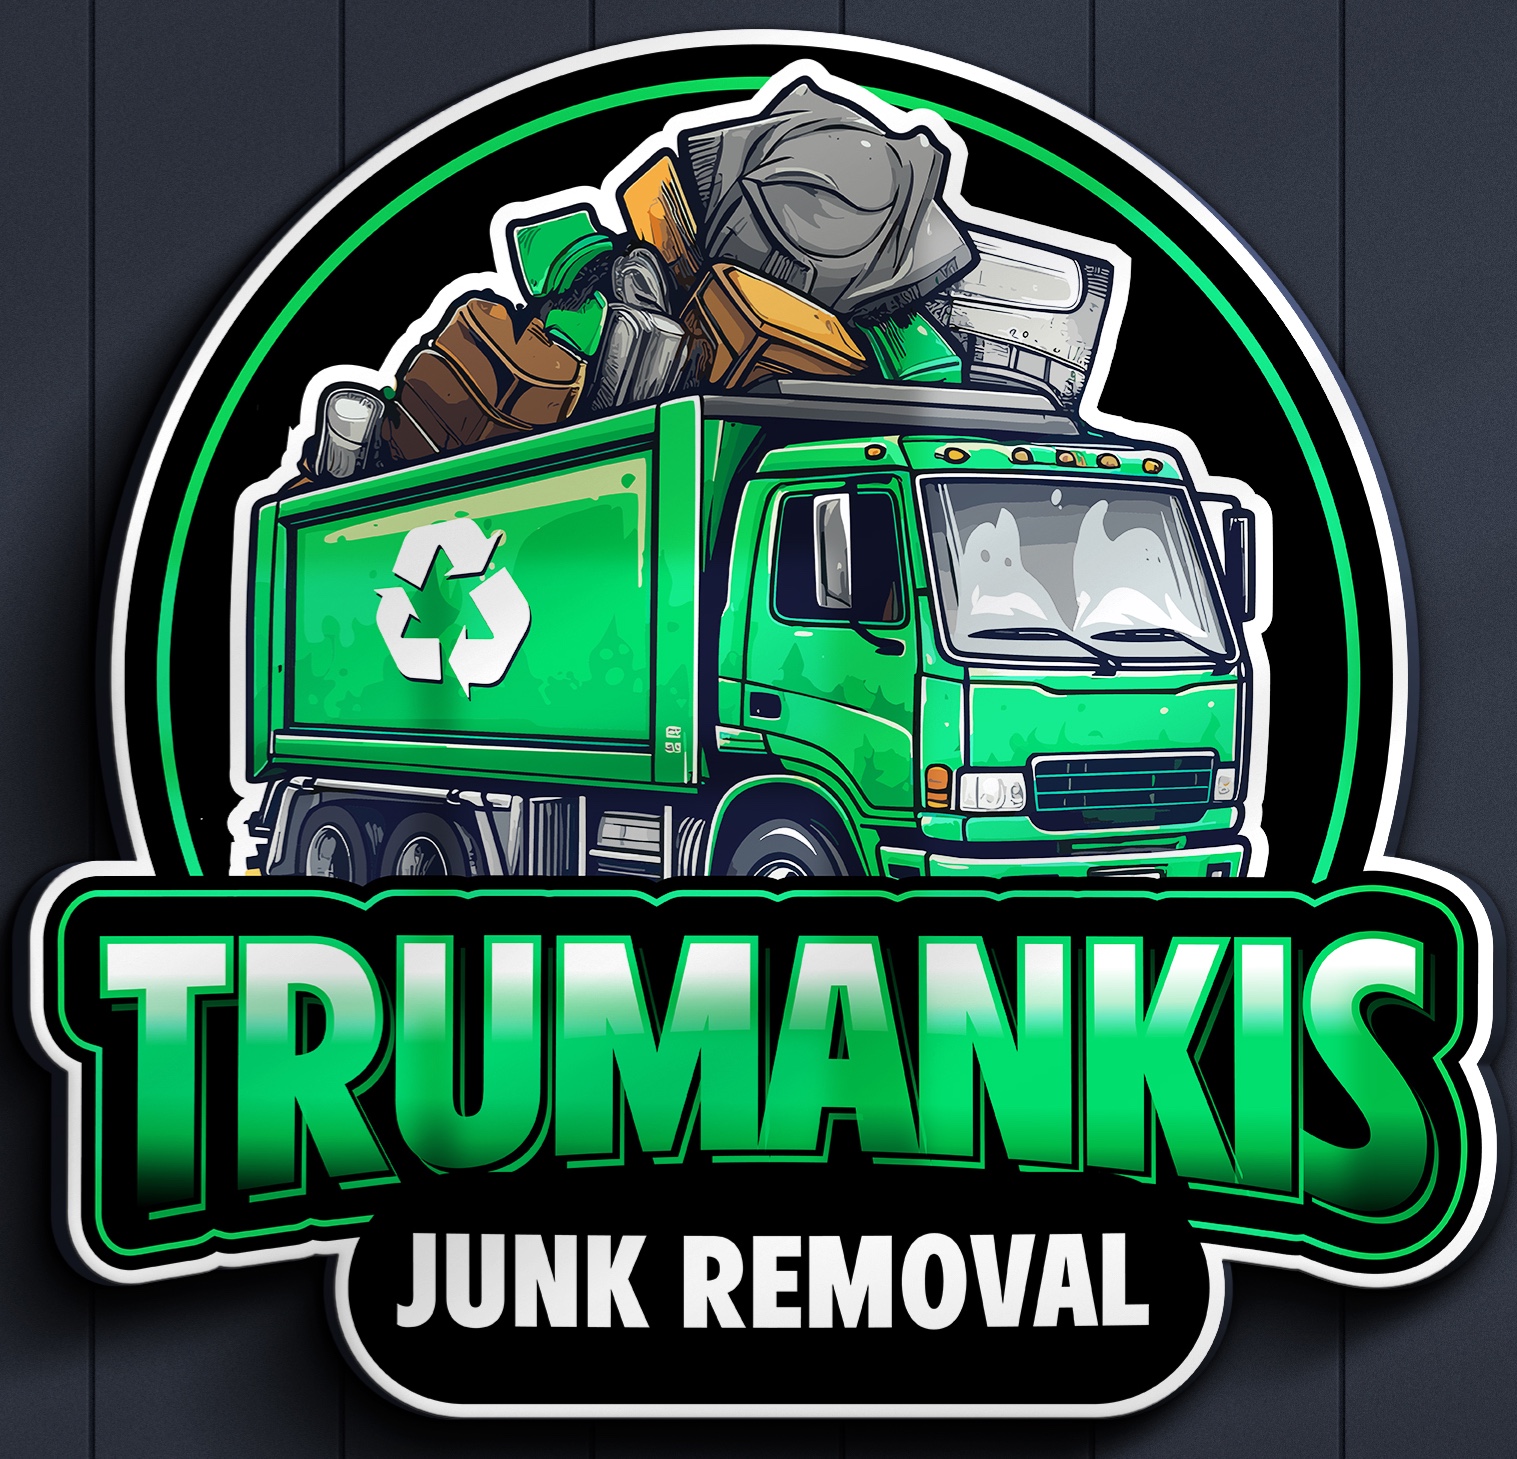 Trumankis's logo